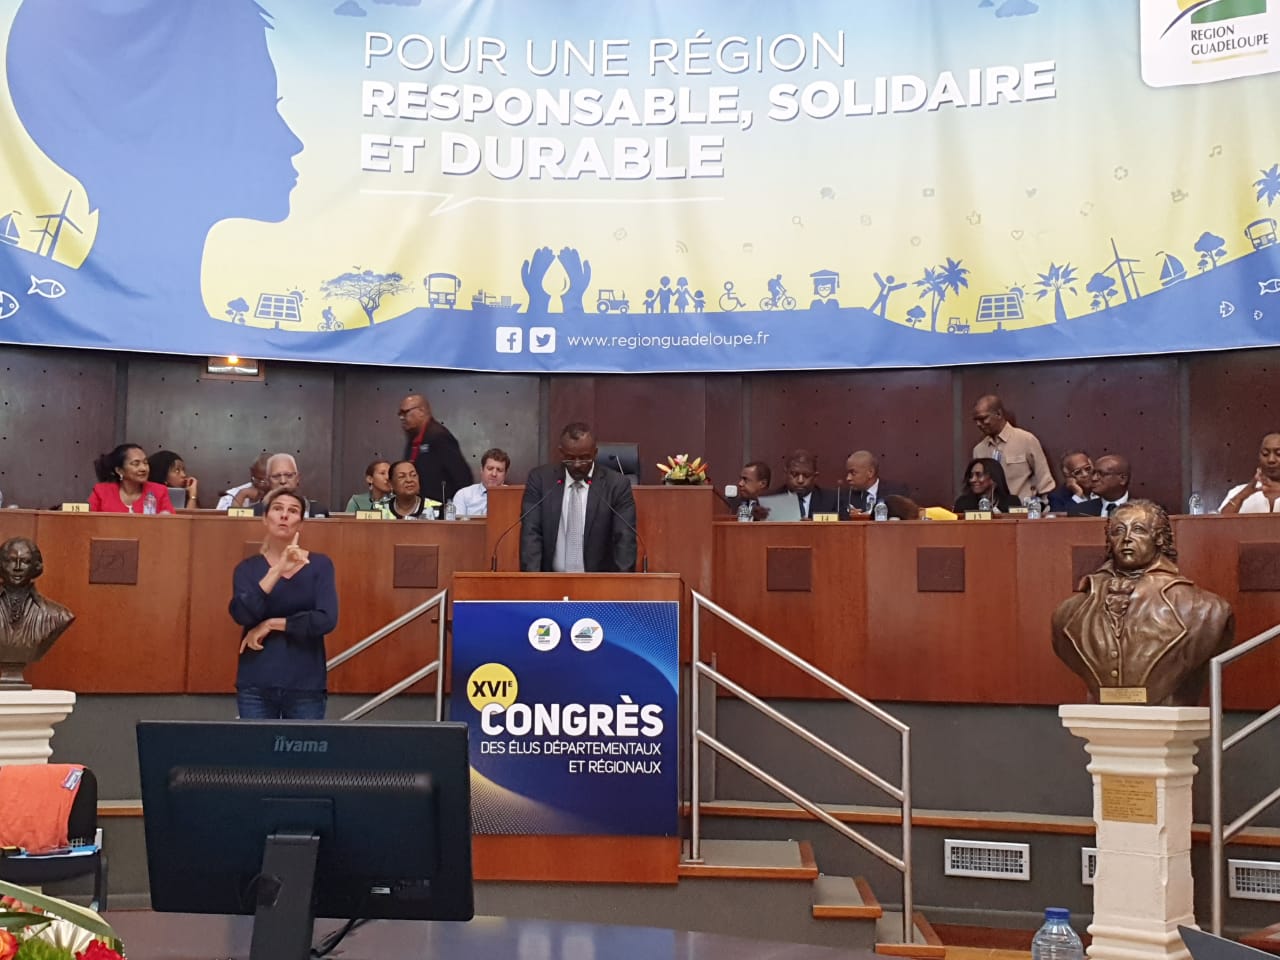     Congrès des élus : Ary Chalus et Josette Borel-Lincertin ont pris la parole 

